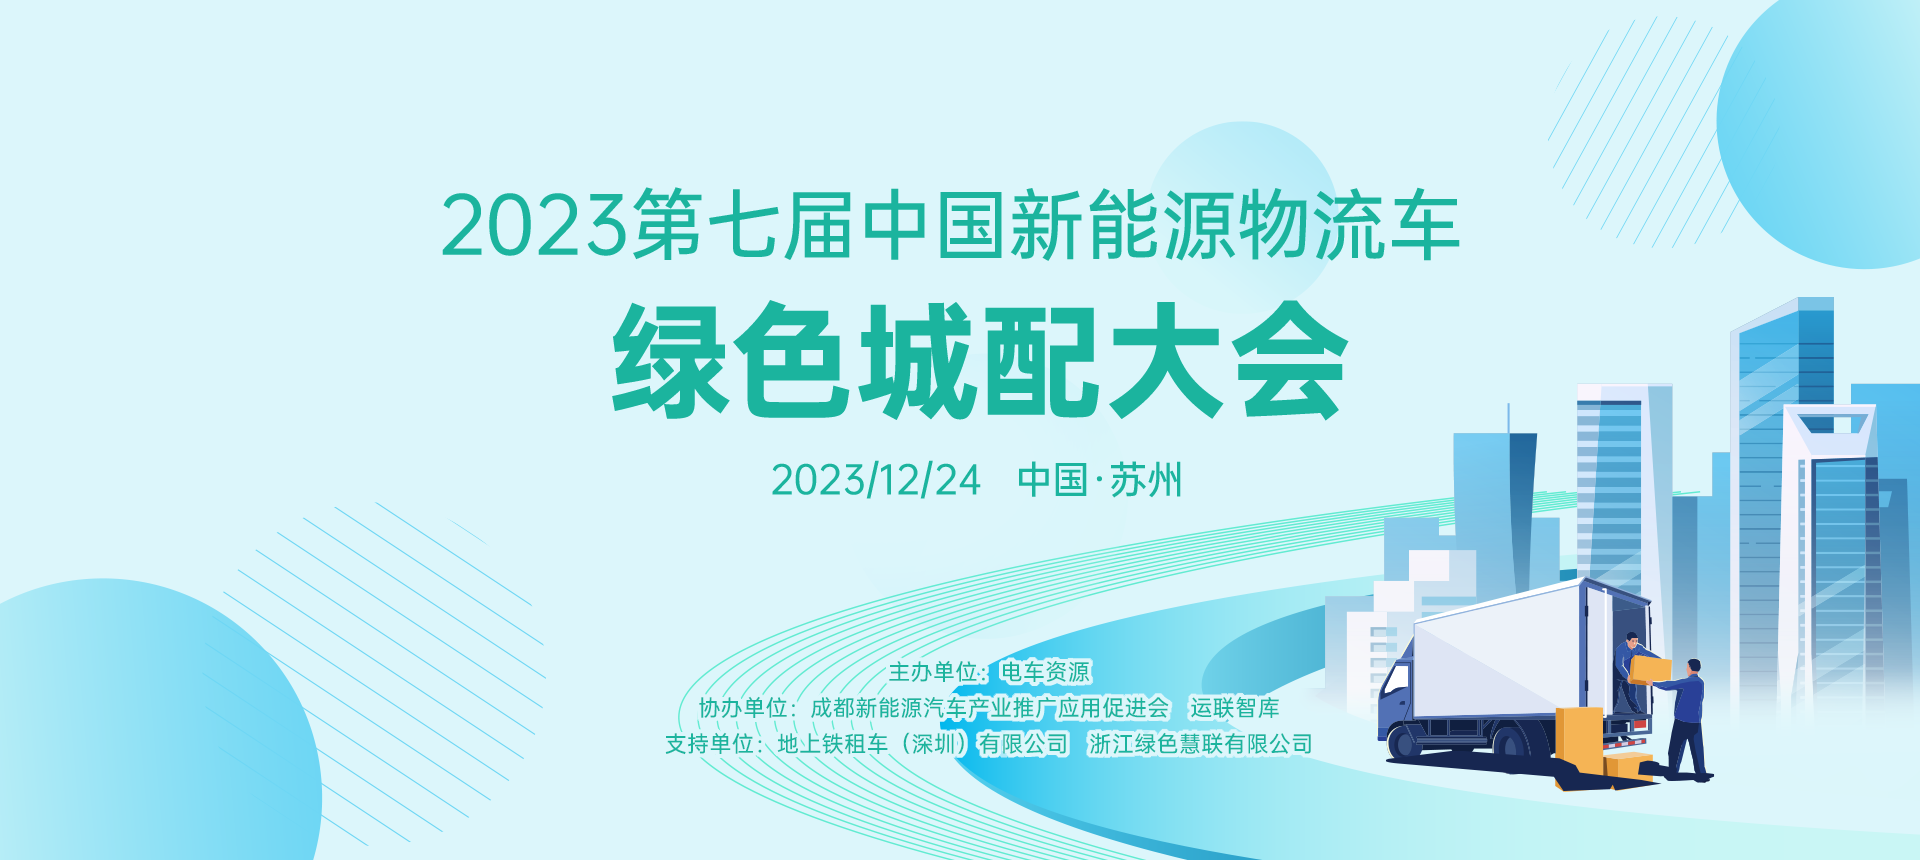 2023第七屆中國新能源物流車-綠色城配大會 2023/12/24 中國·蘇州